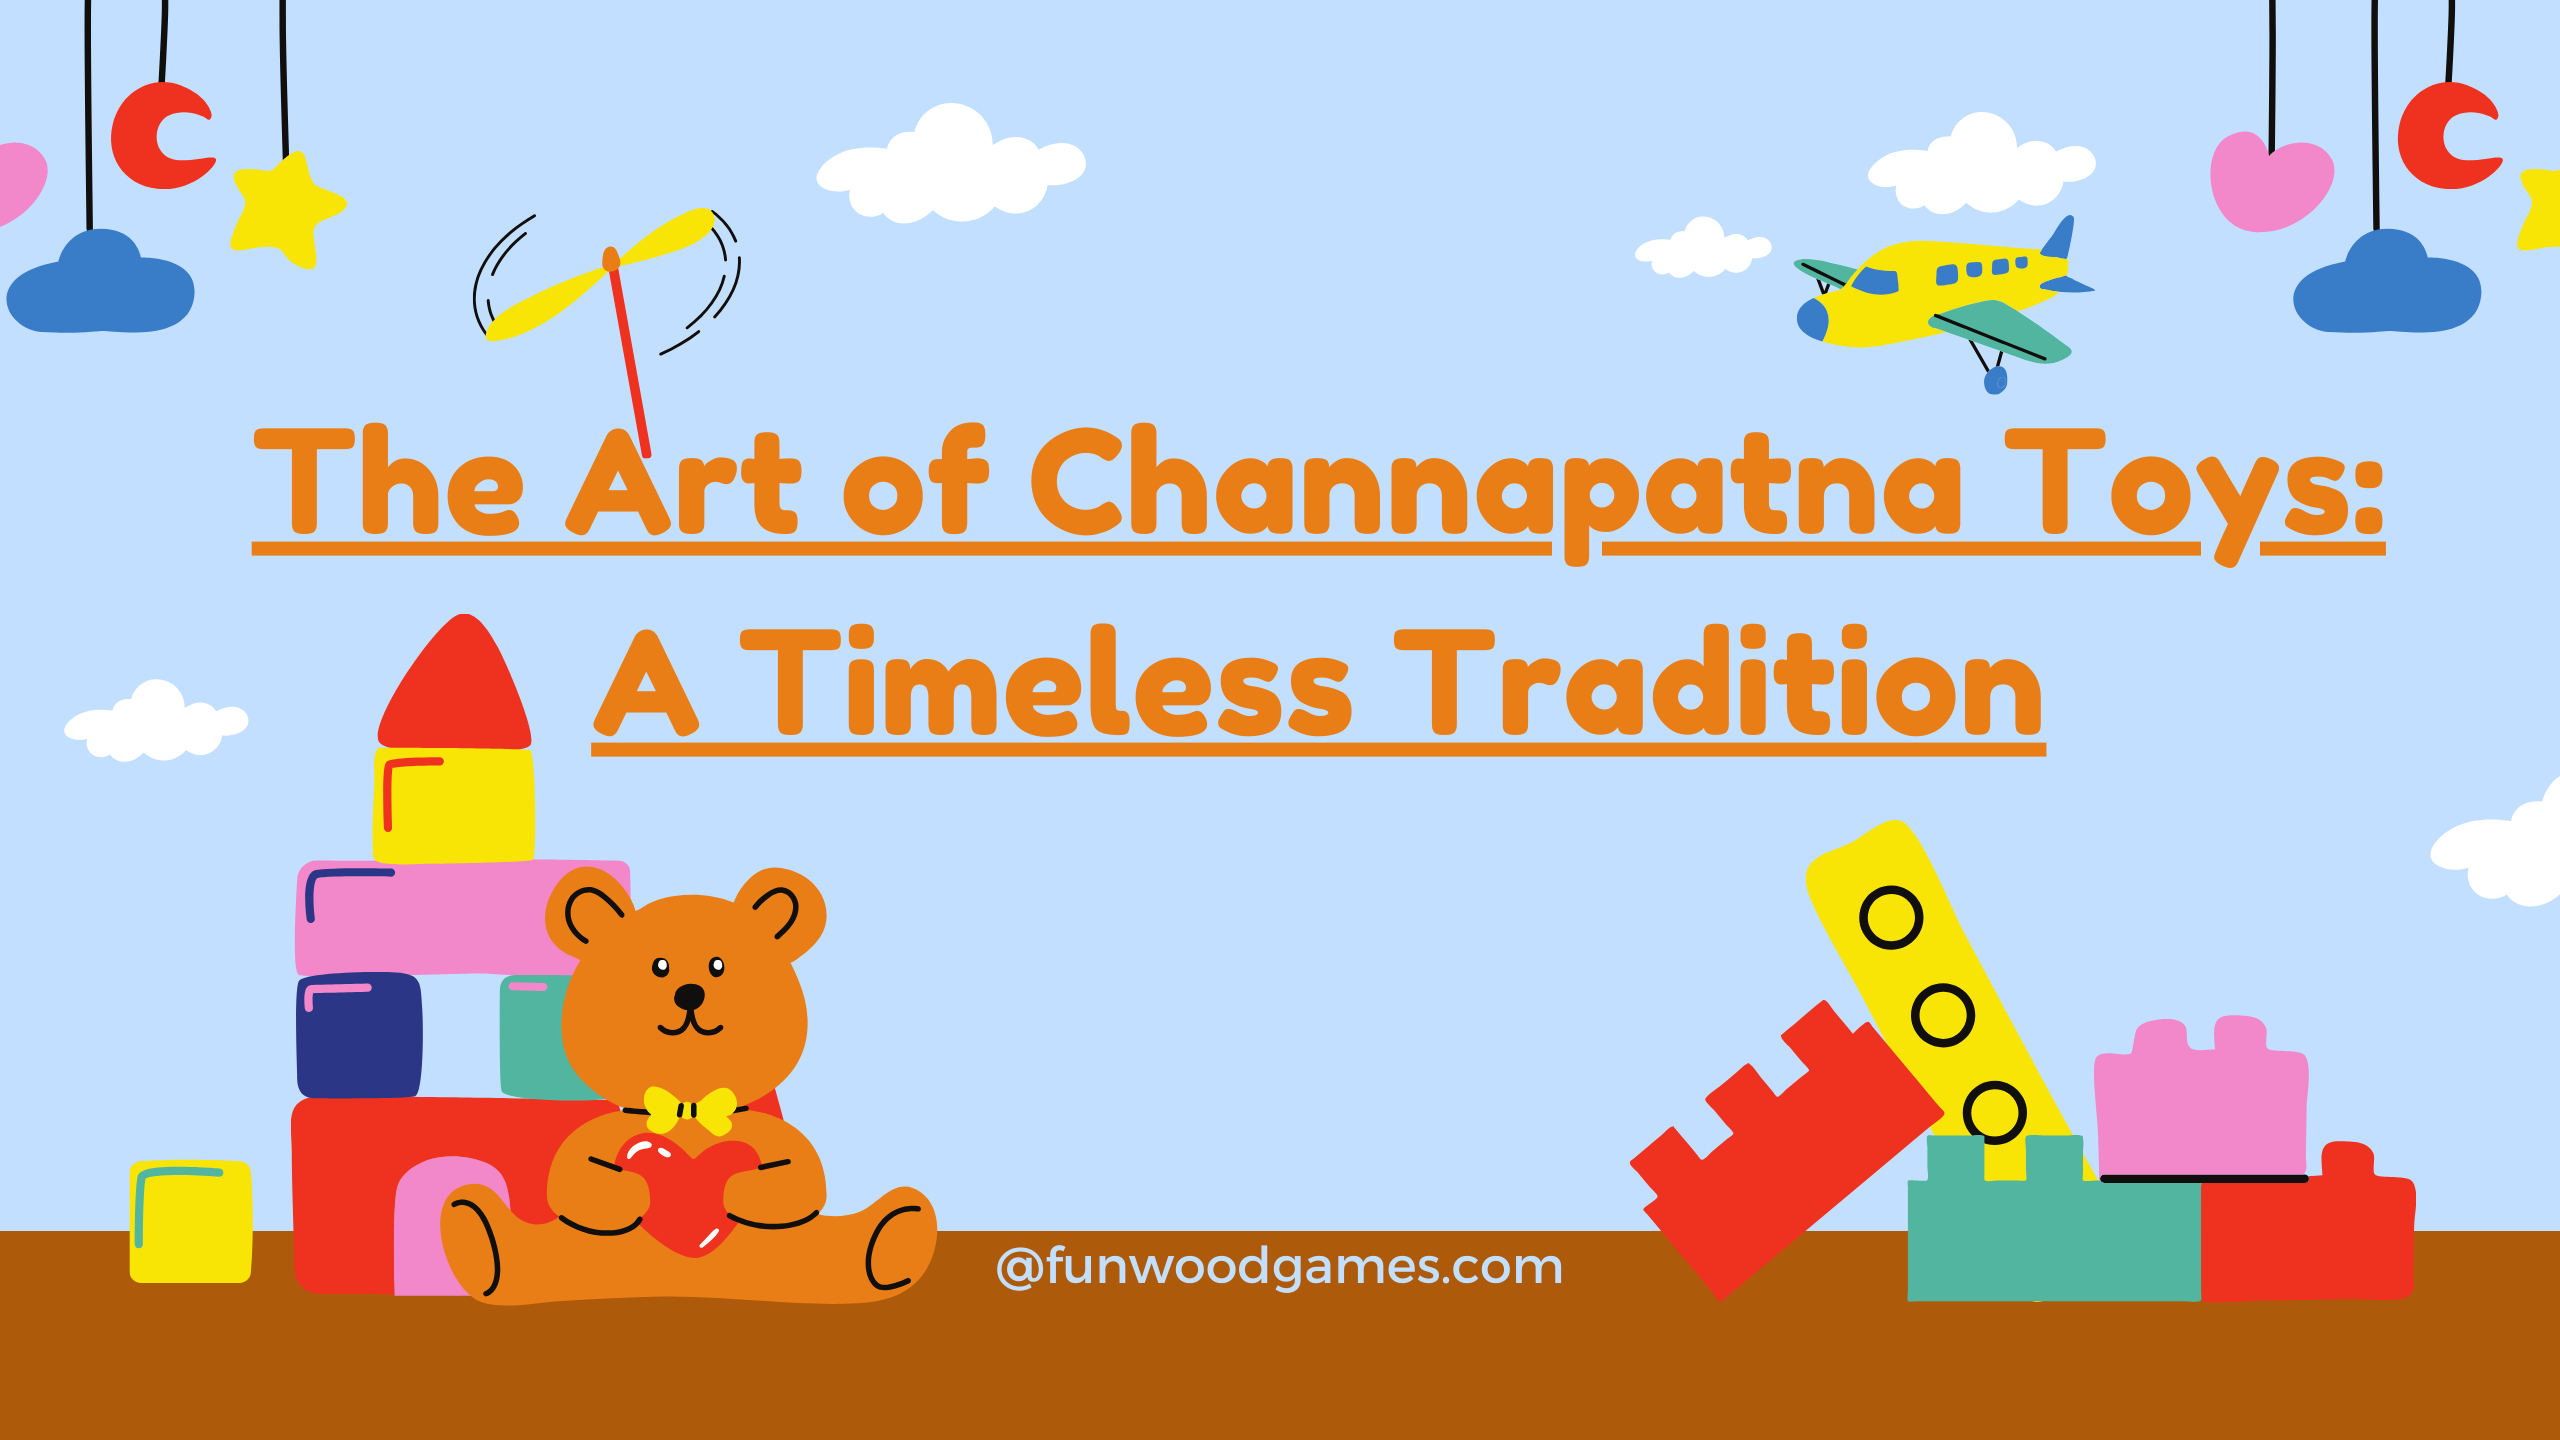 Channapatna toys